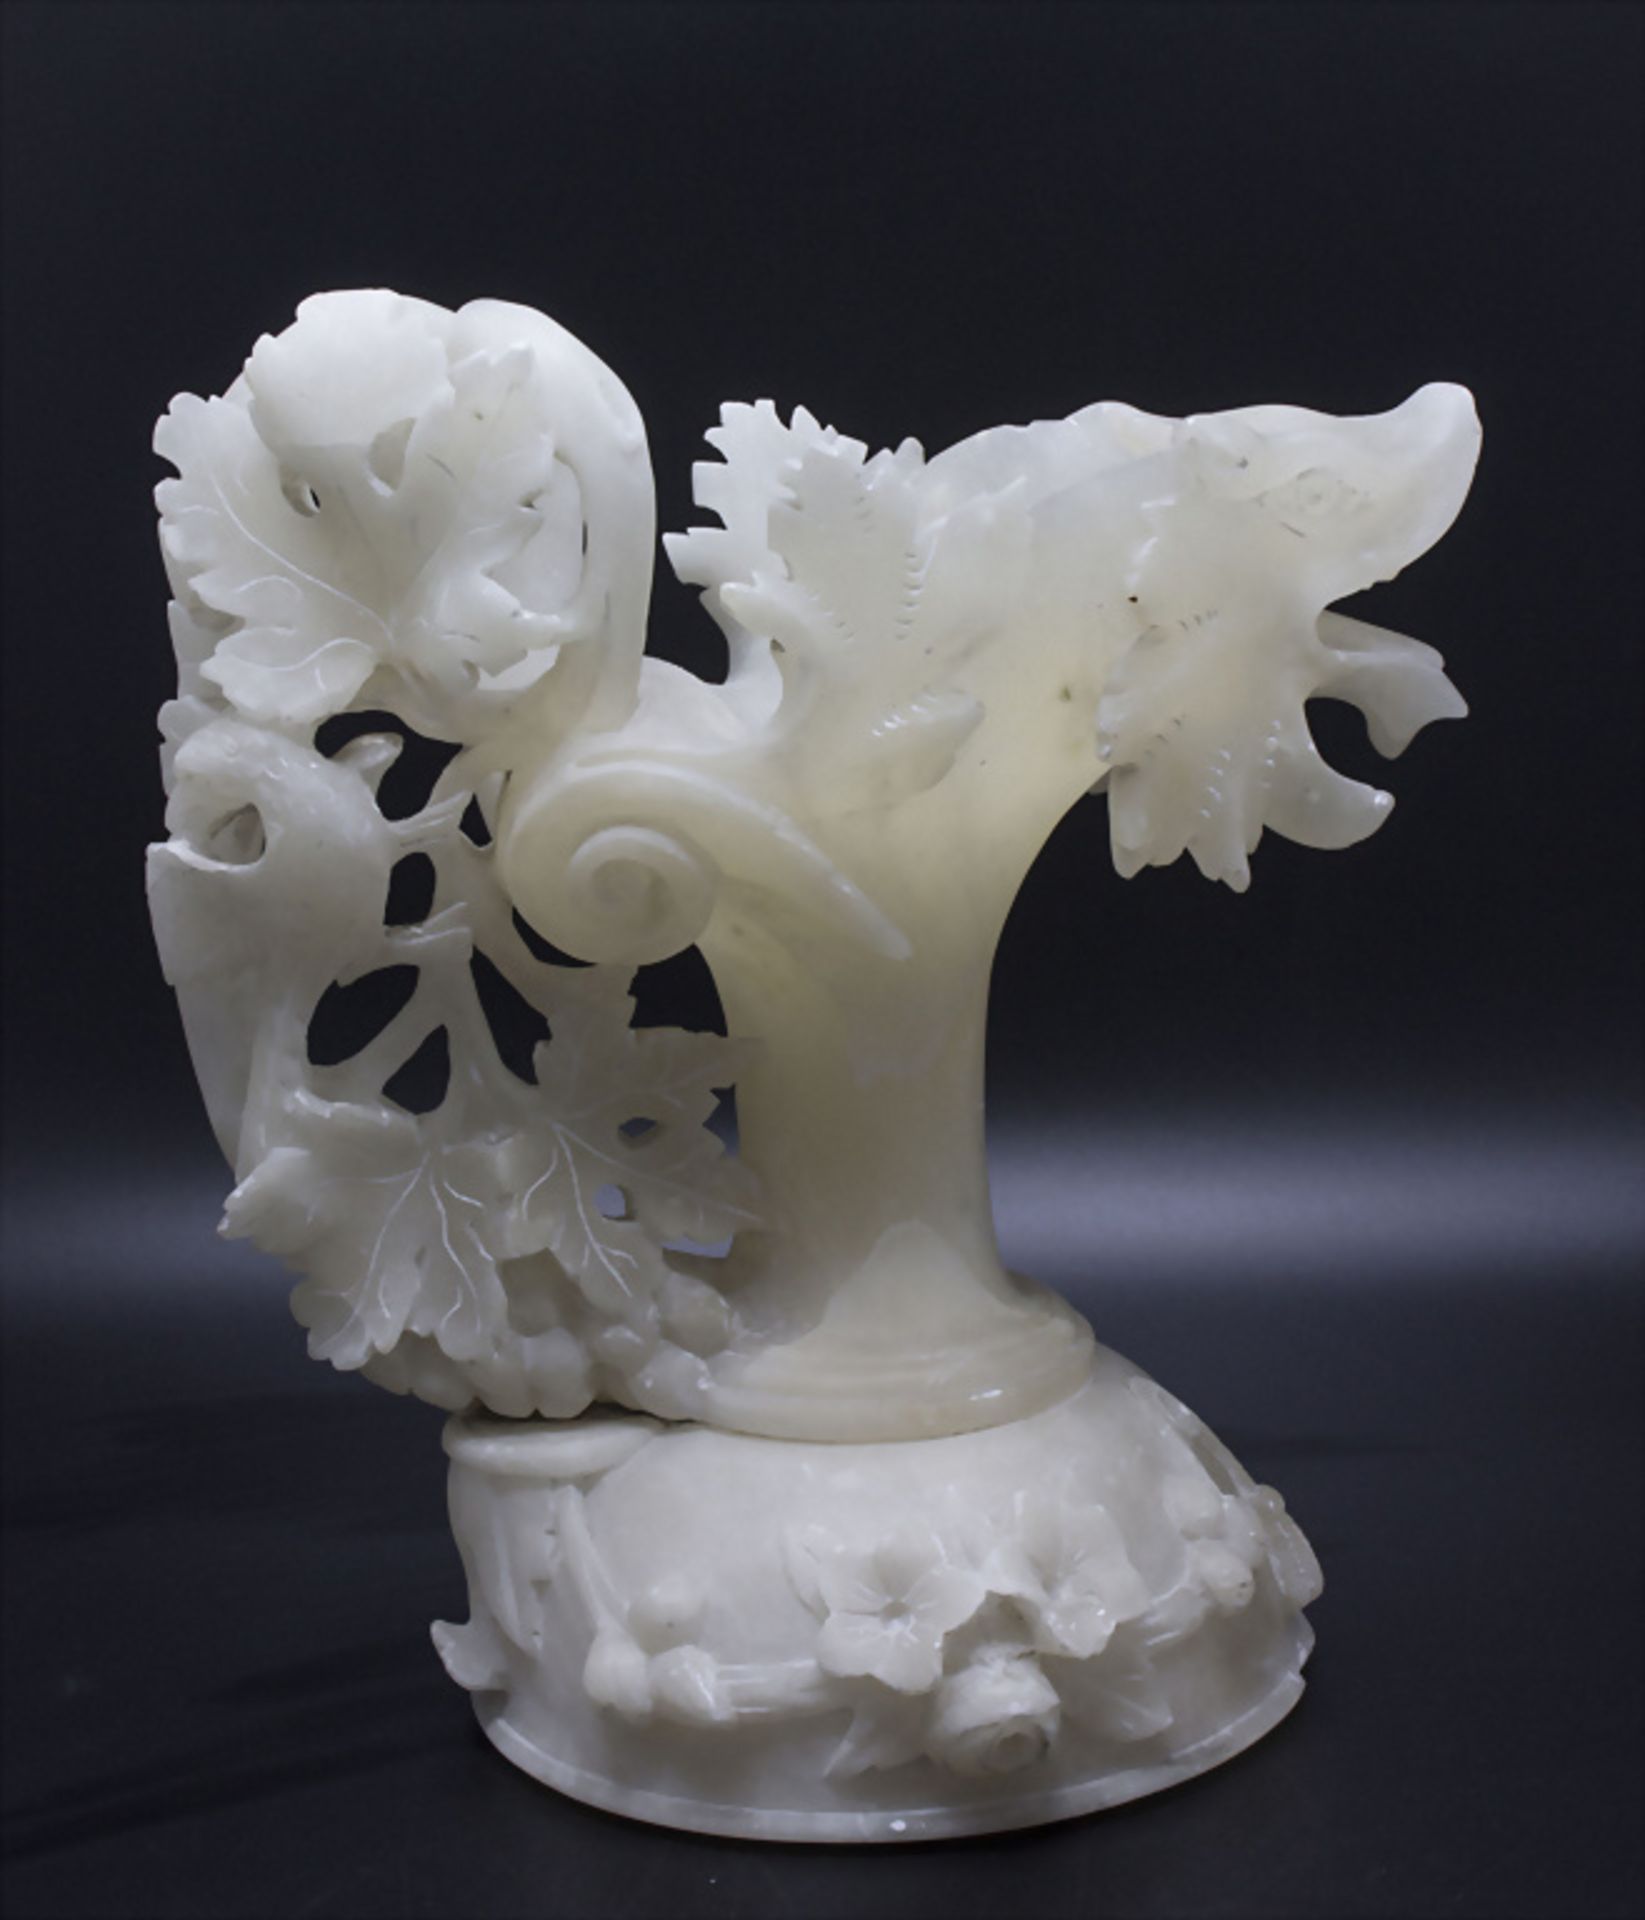 Jugendstil Alabastervase 'Drache' / An Art Nouveau alabaster vase 'dragon', Italien, um 1900